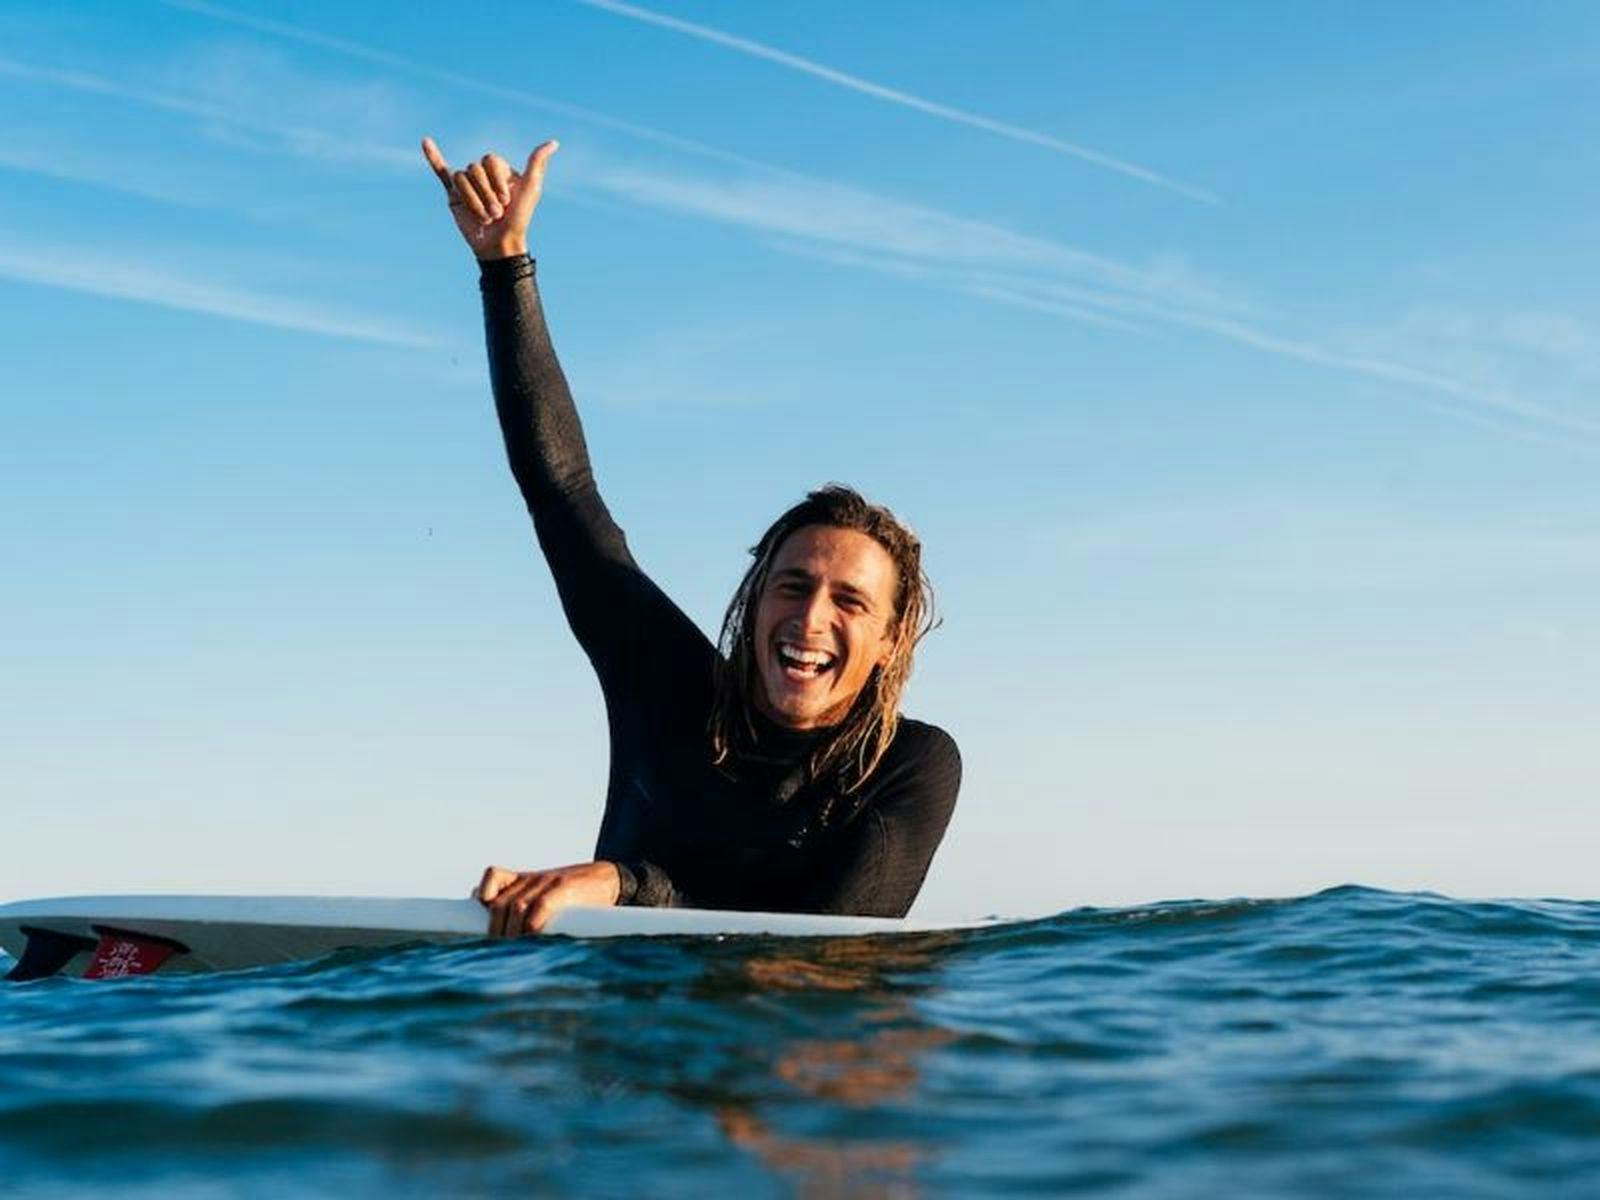 alleen op solo surfvakantie 5 tips